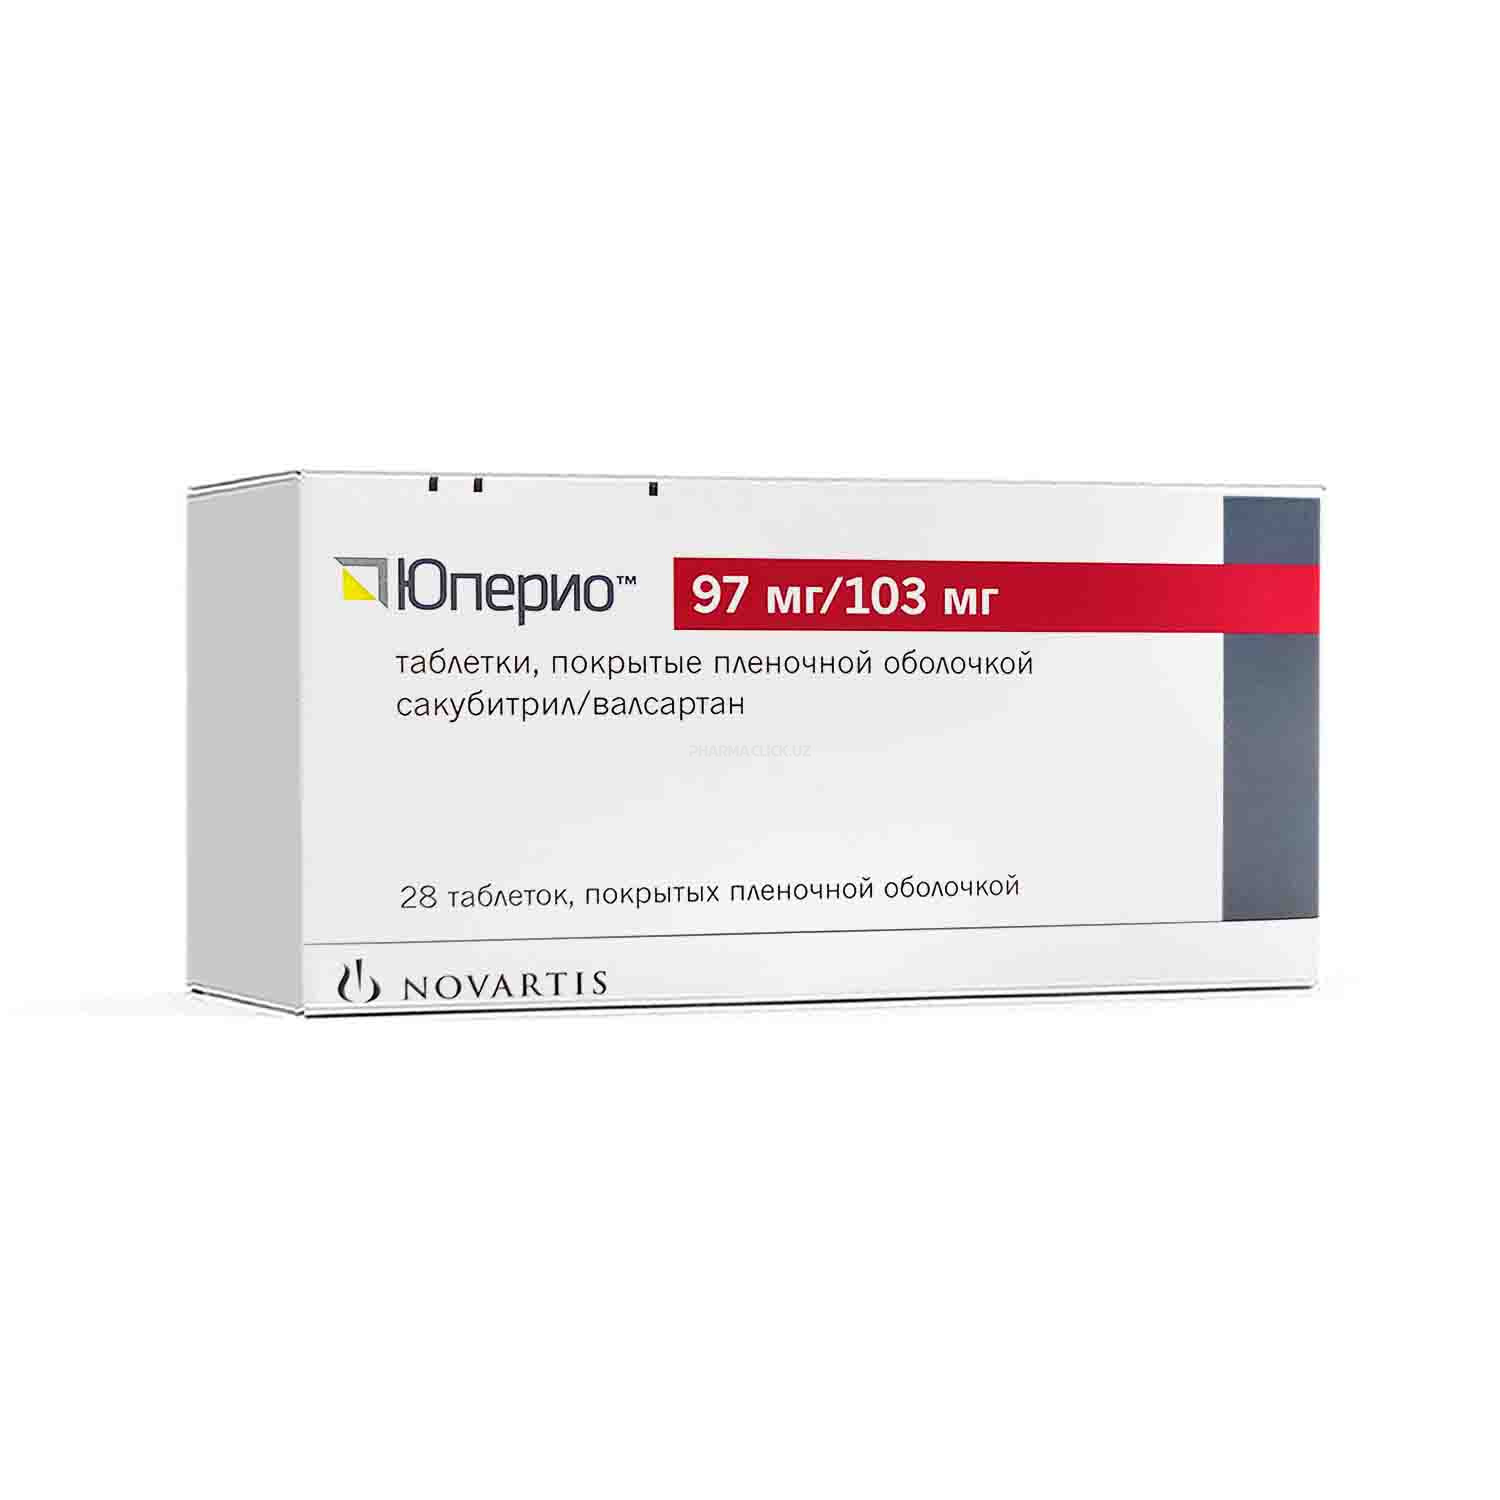 Yuperio tab. 97 mg/103 mg №28